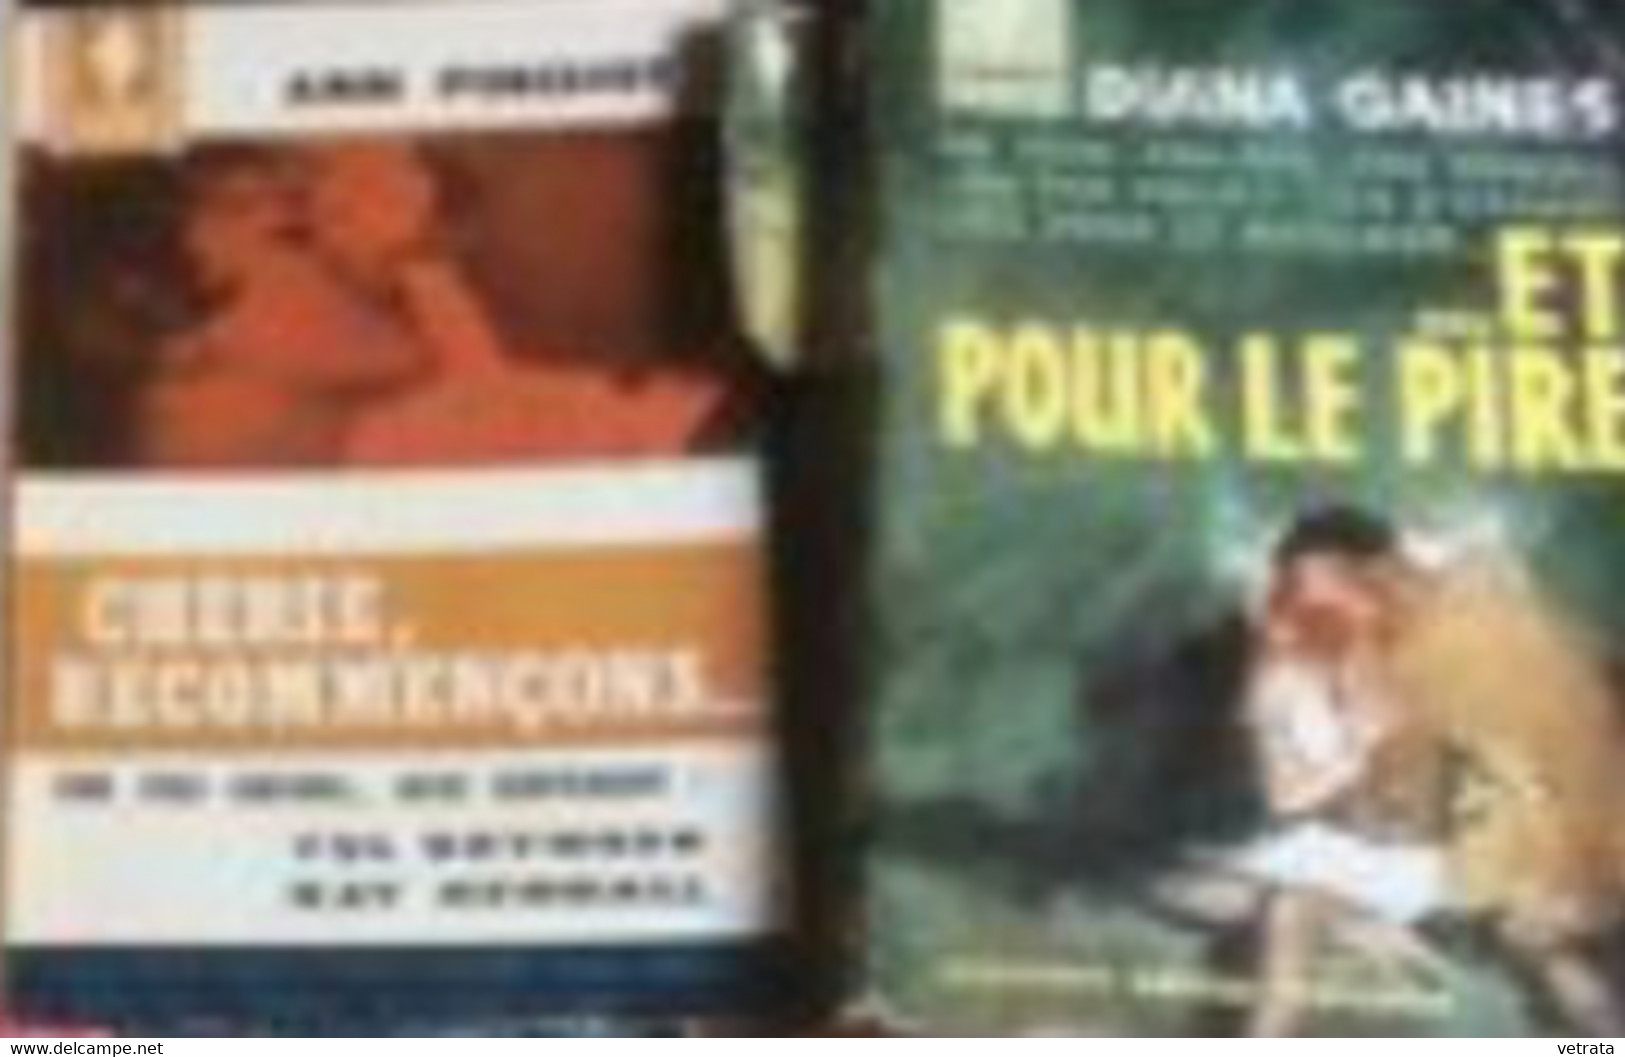 5 livres Marabout : E. Forbes, Paradise / F. Yerby, Dilemme Du Dr Childers / J. Lee, En Lettres De Feu / A. Pinchot, Ché - Lotti E Stock Libri